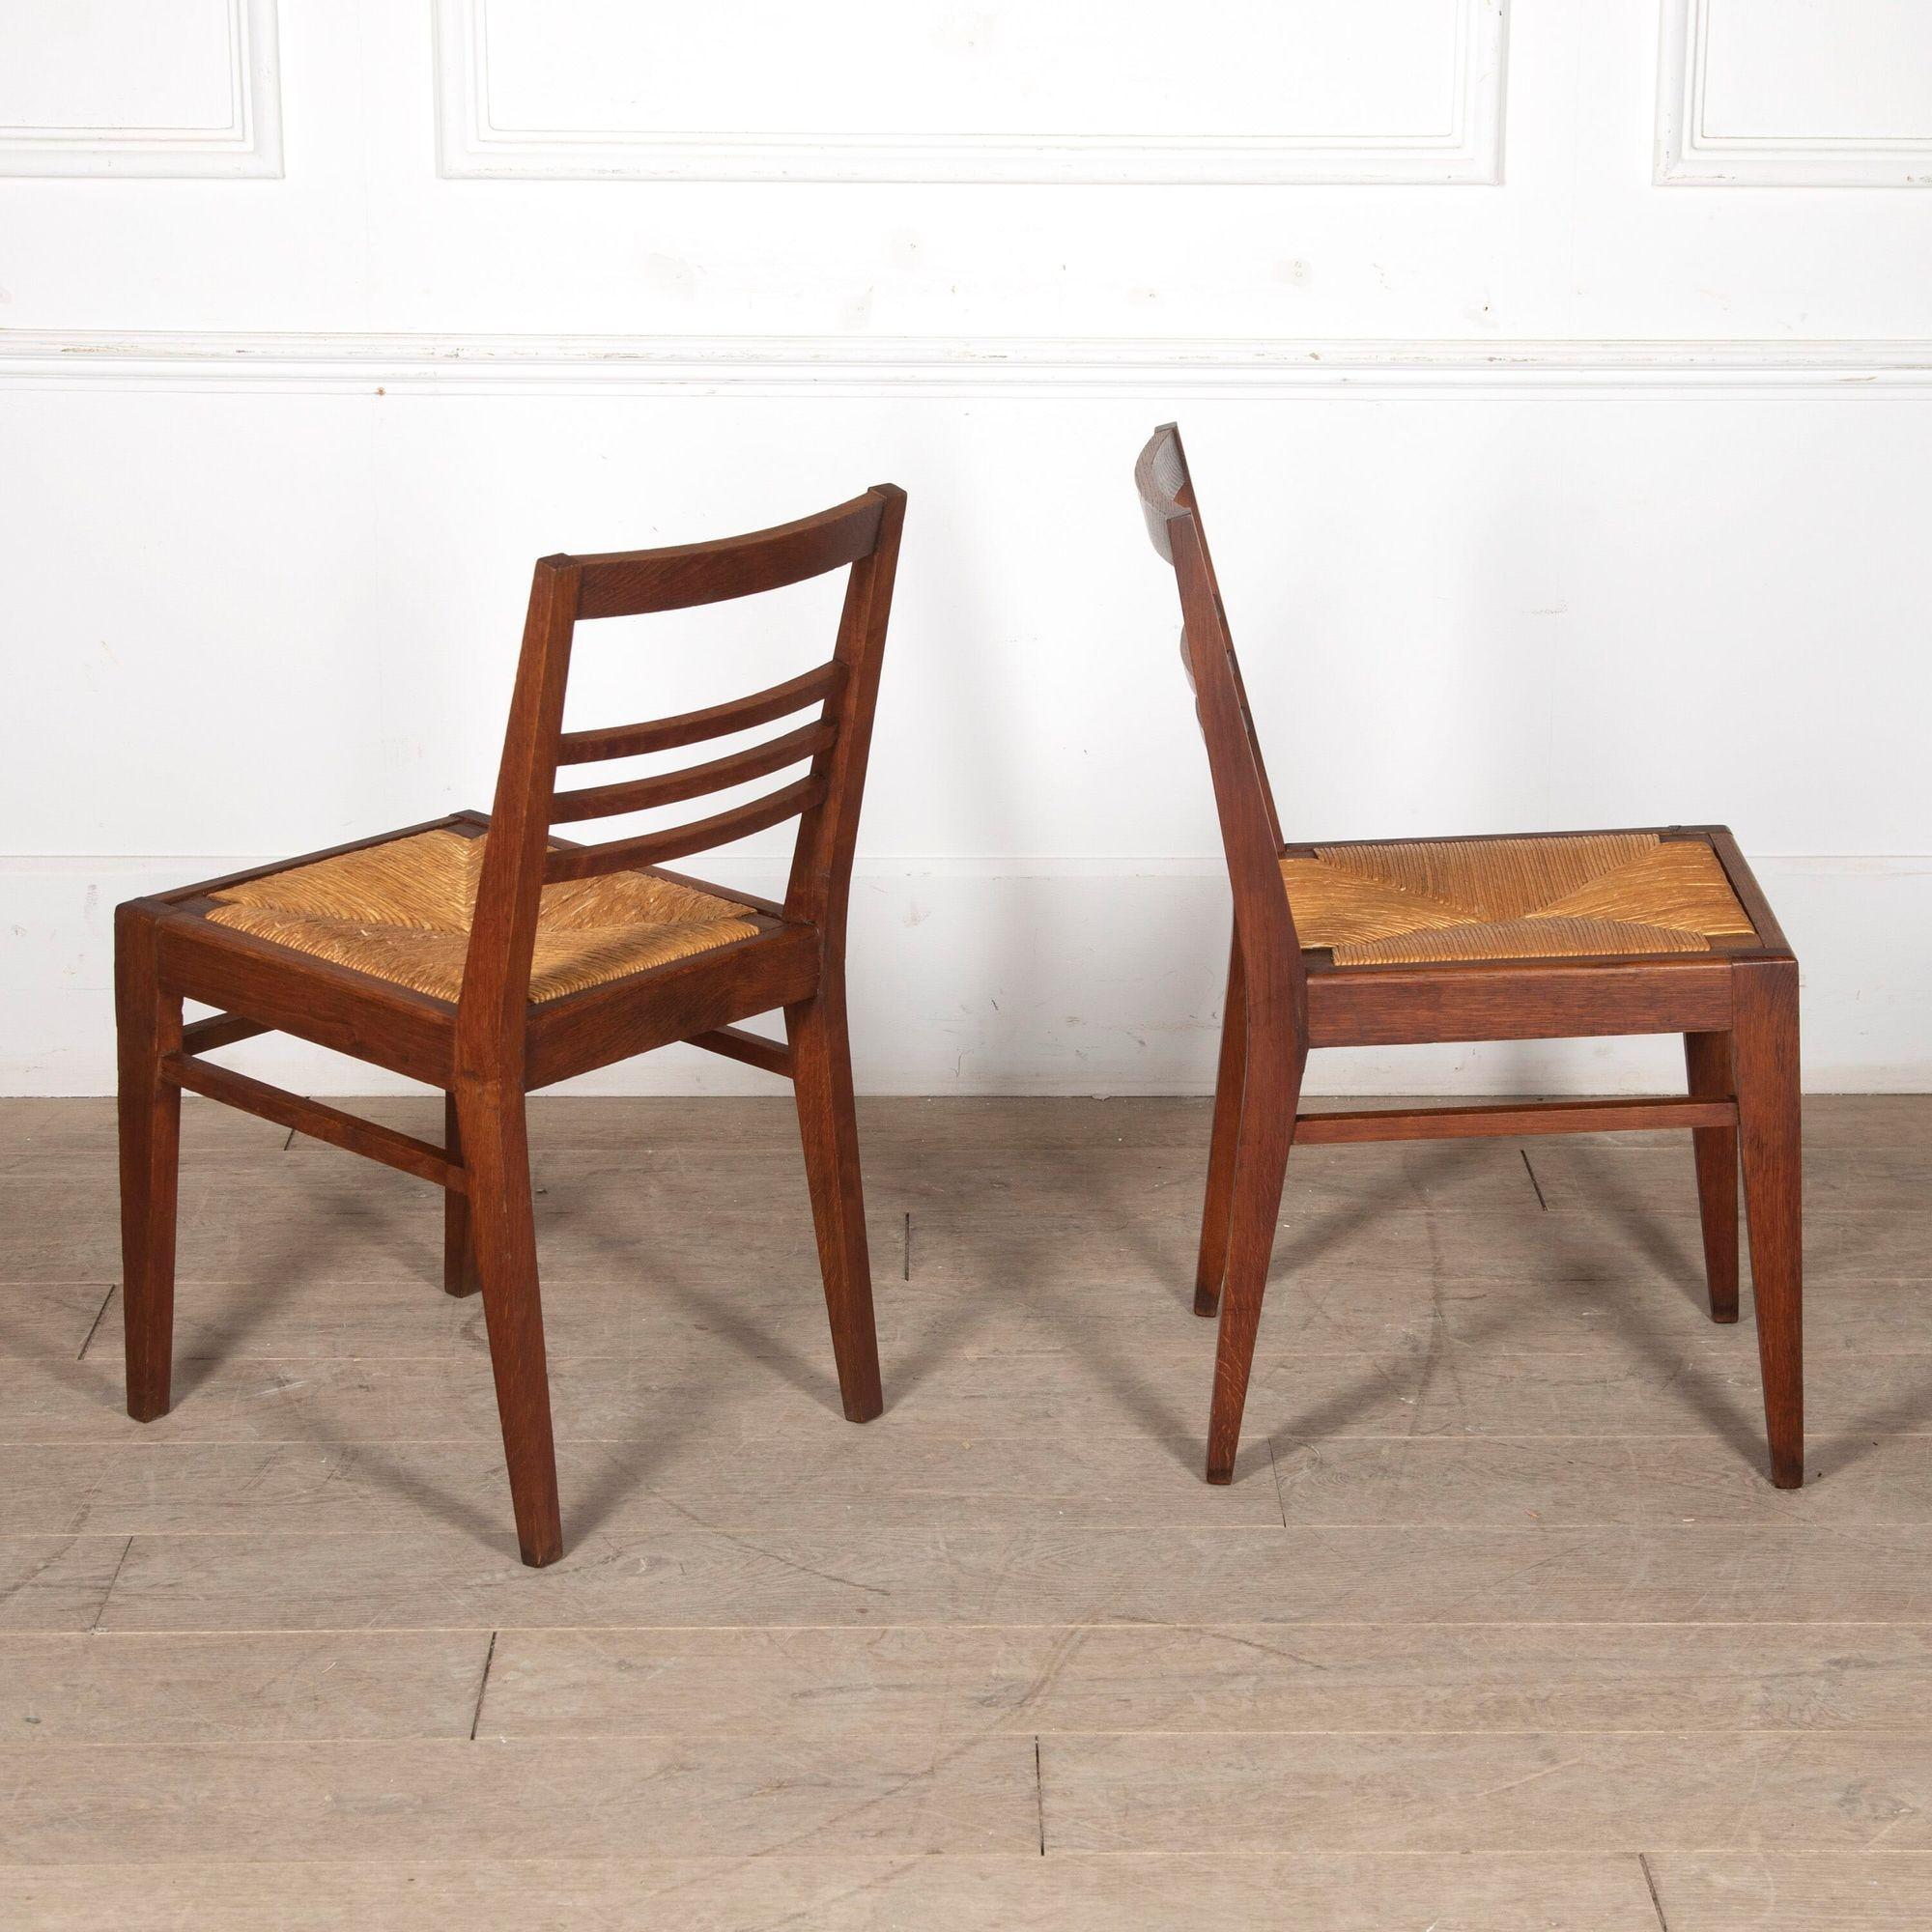 Joli ensemble de six chaises de salle à manger en chêne du milieu du siècle avec des sièges en jonc par Rene Gabriel.
Vers les années 1950.